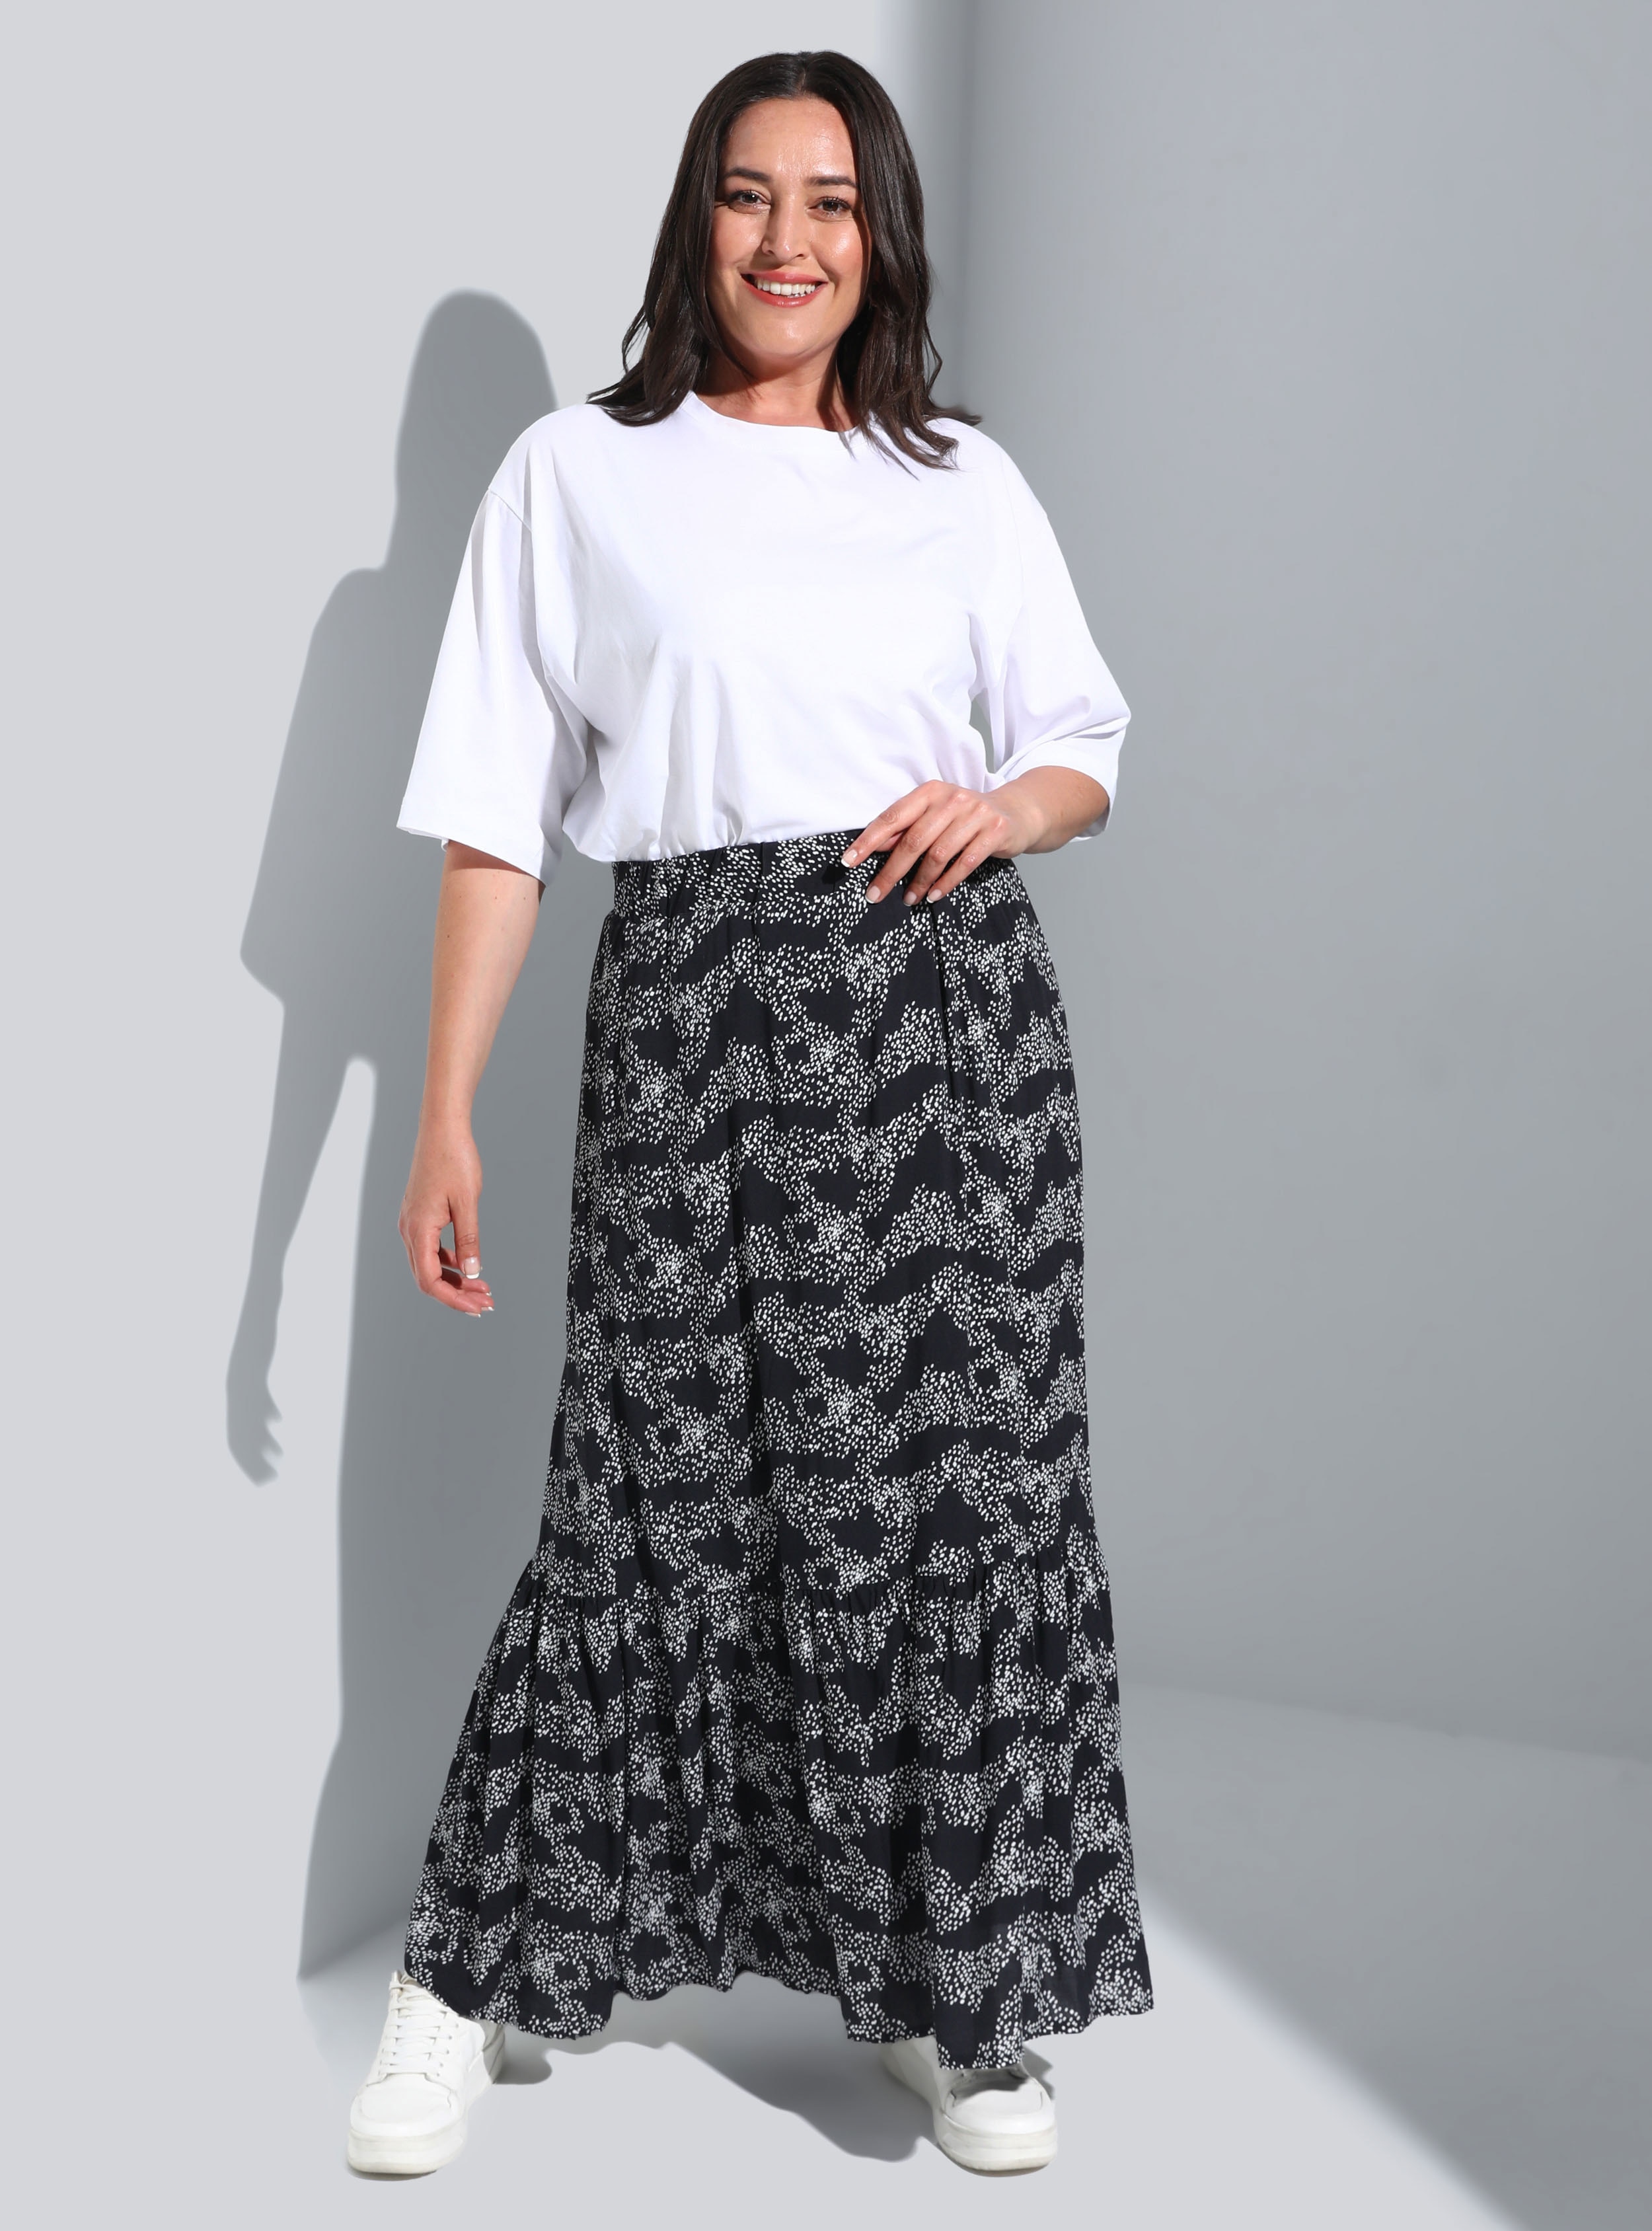 Black - White - Multi - Fully Lined - Plus Size Skirt